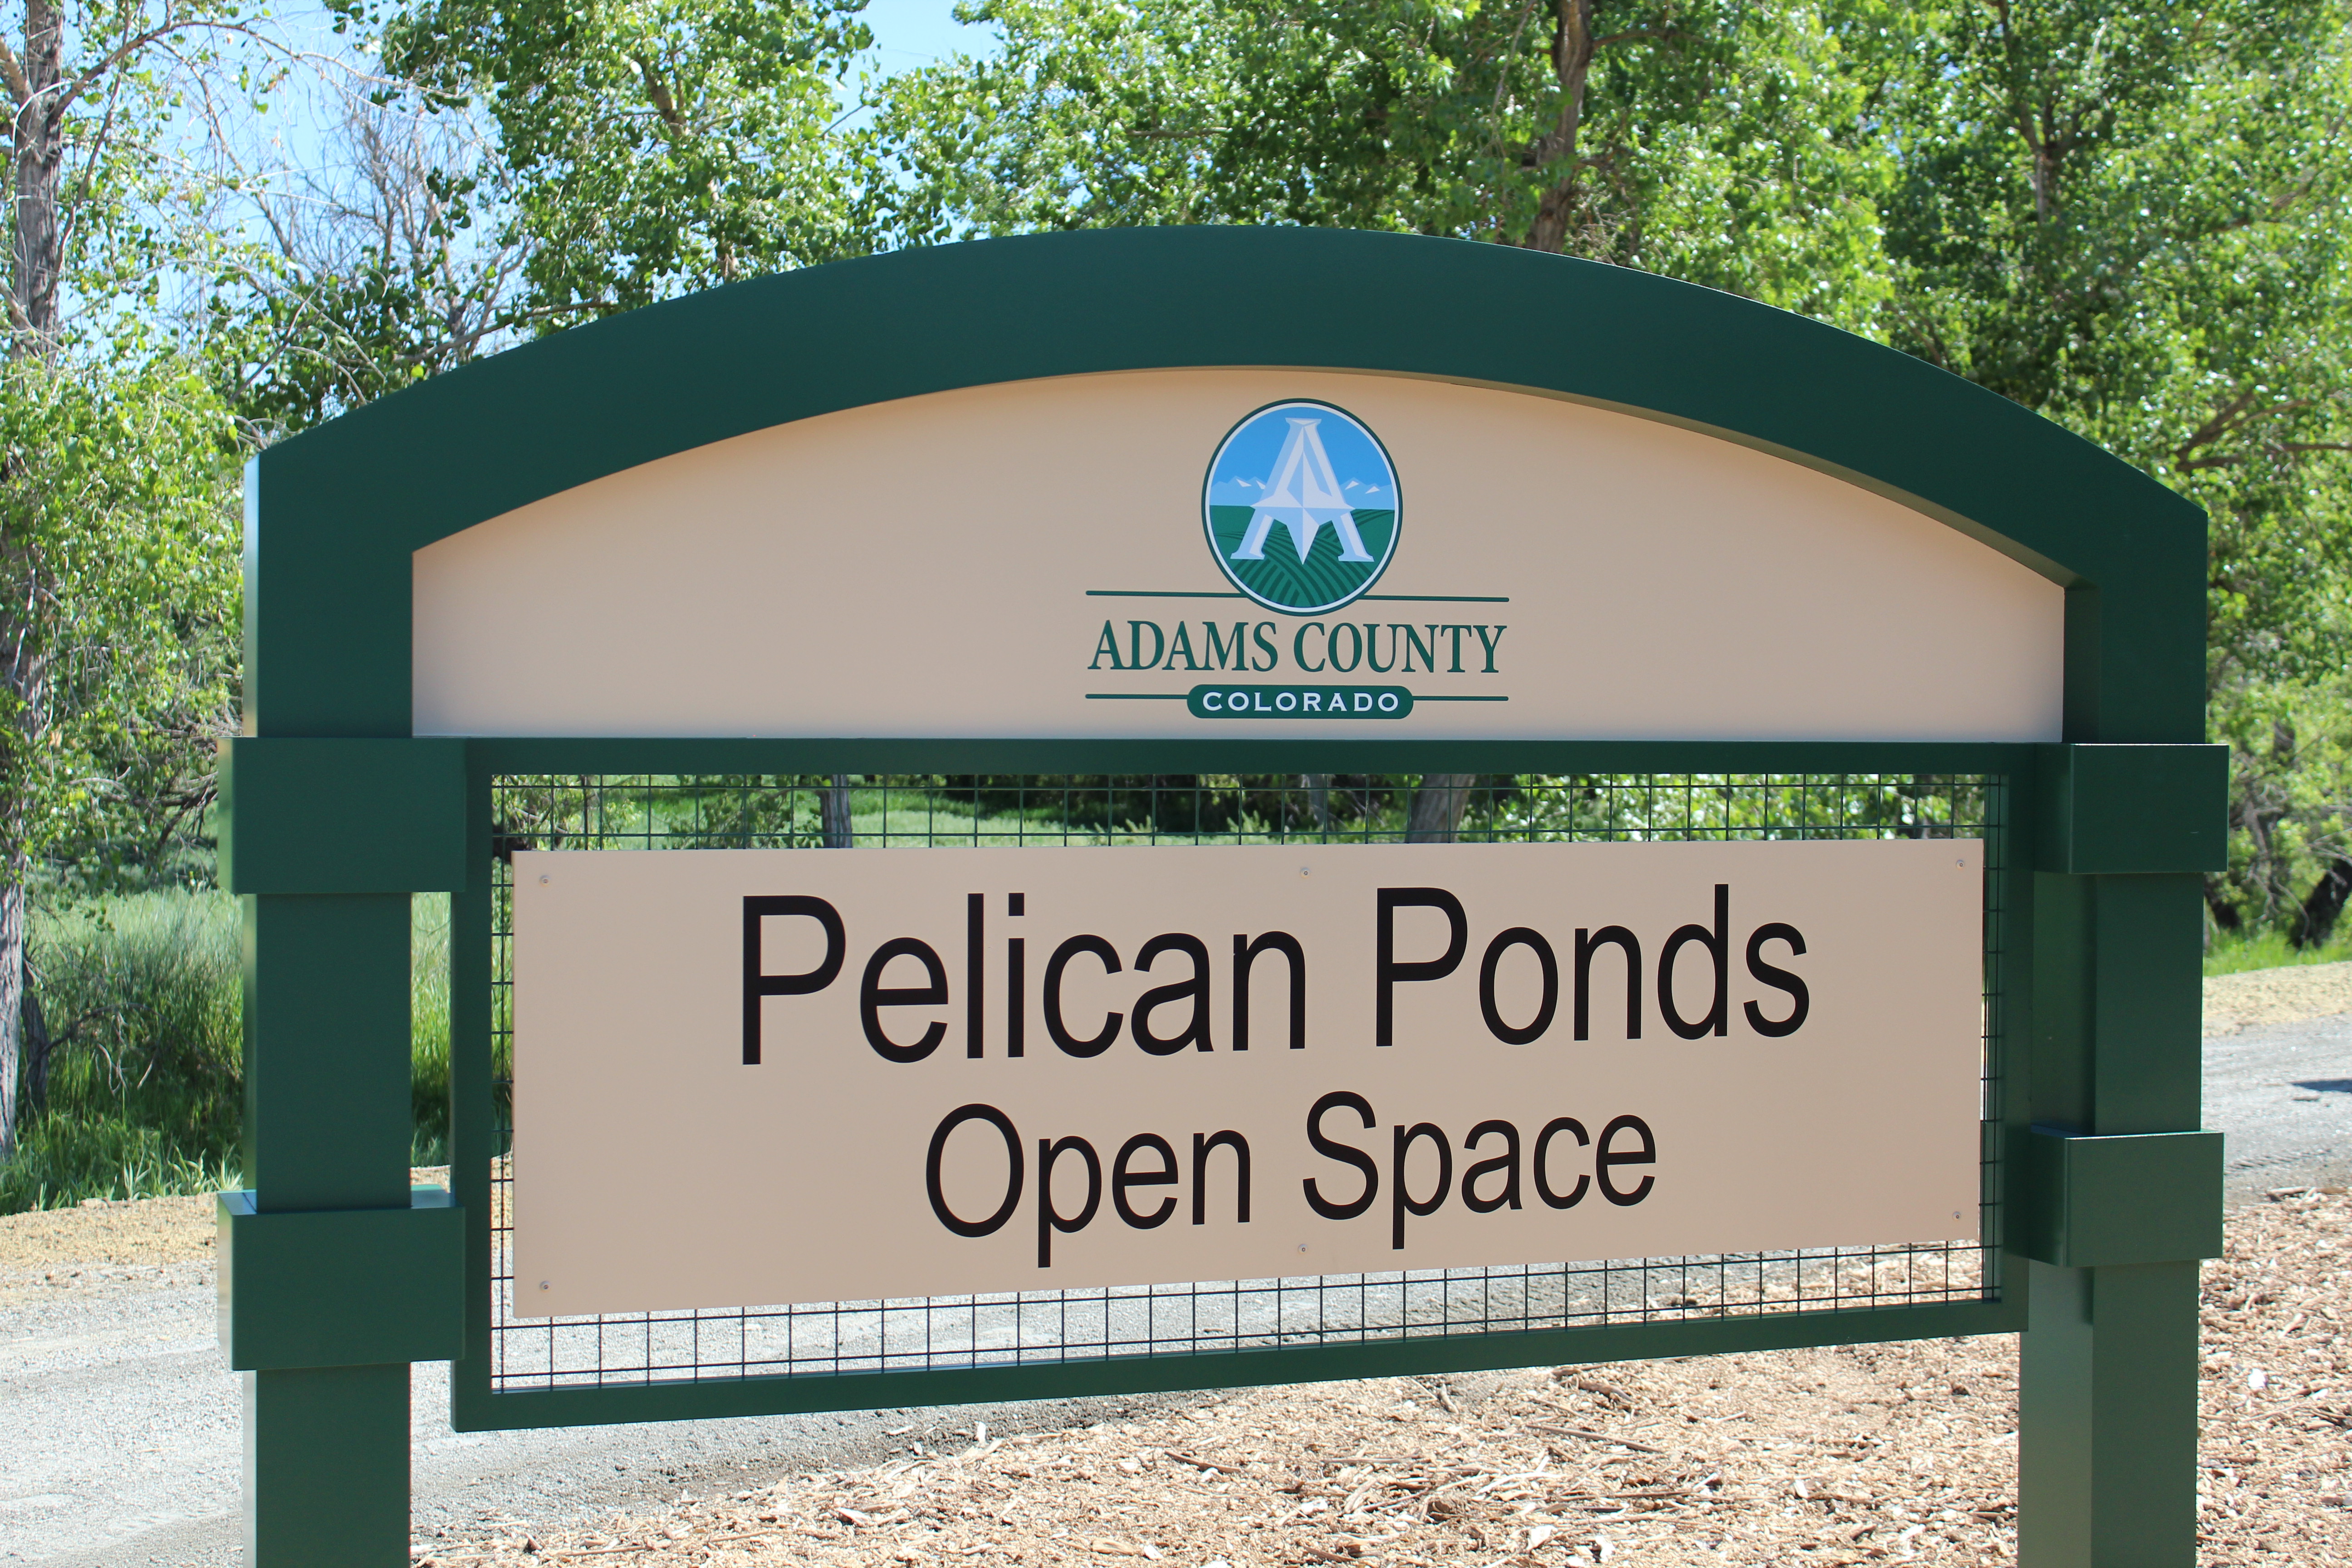 Pelican Ponds